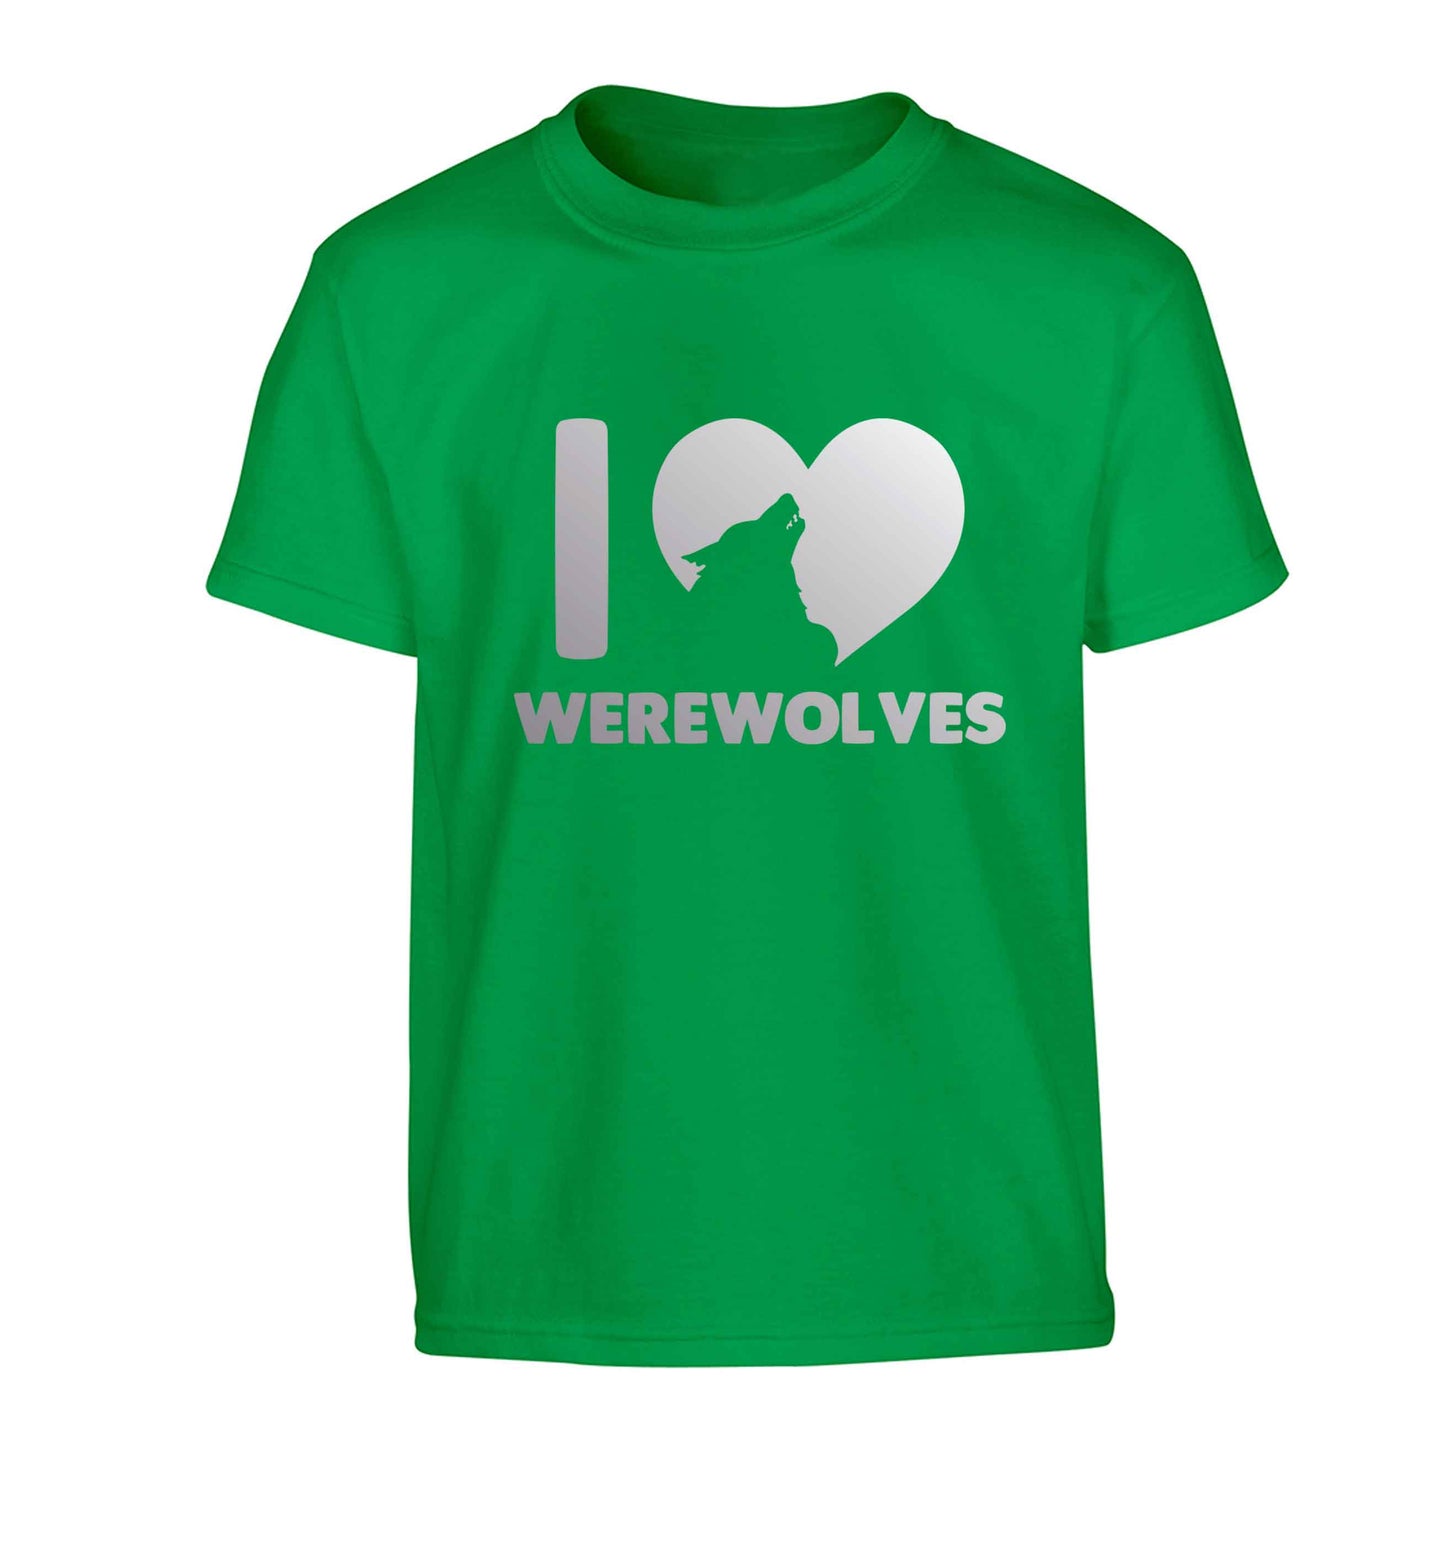 I love werewolves Children's green Tshirt 12-13 Years